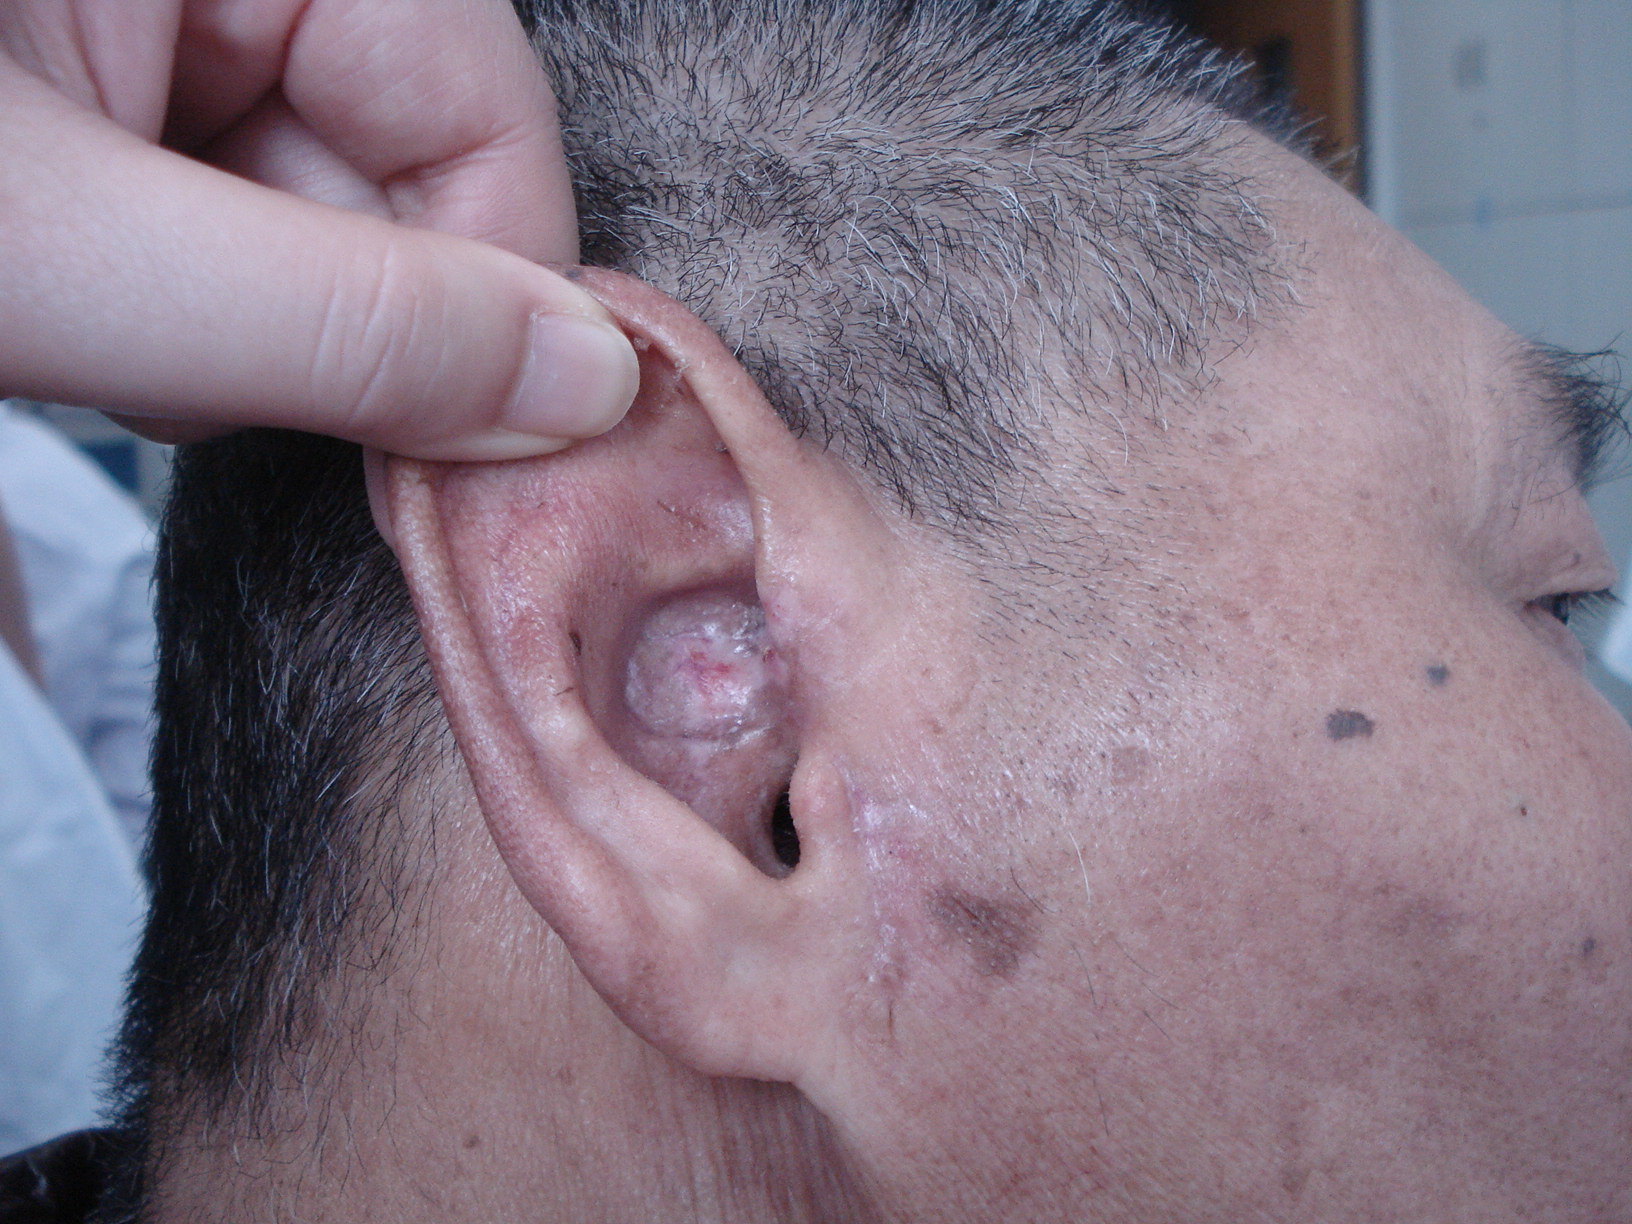 耳甲腔肿物图片